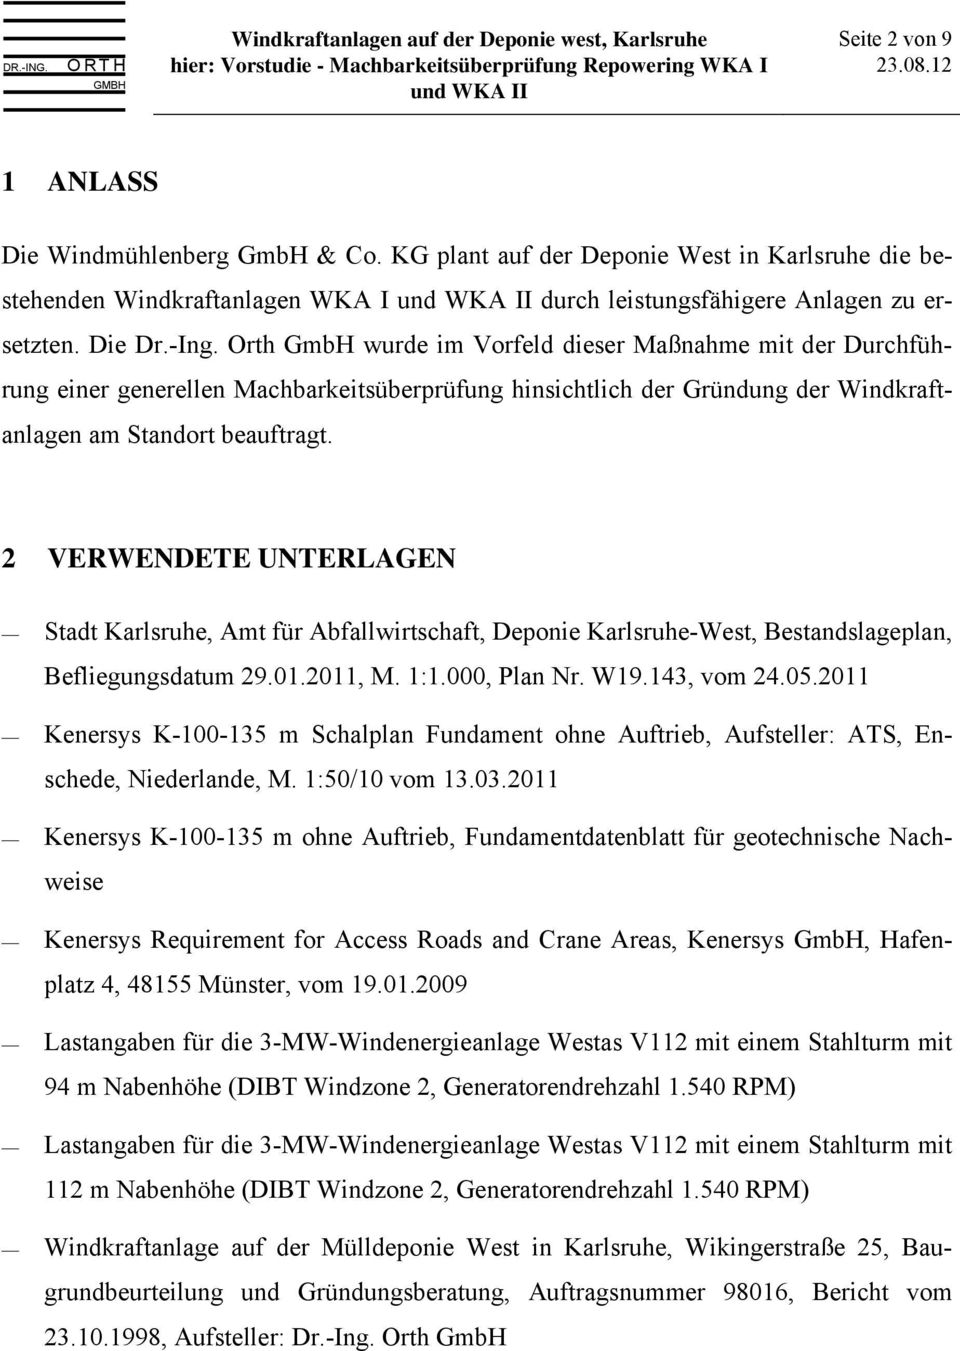 2 VERWENDETE UNTERLAGEN Stadt Karlsruhe, Amt für Abfallwirtschaft, Deponie Karlsruhe-West, Bestandslageplan, Befliegungsdatum 29.01.2011, M. 1:1.000, Plan Nr. W19.143, vom 24.05.